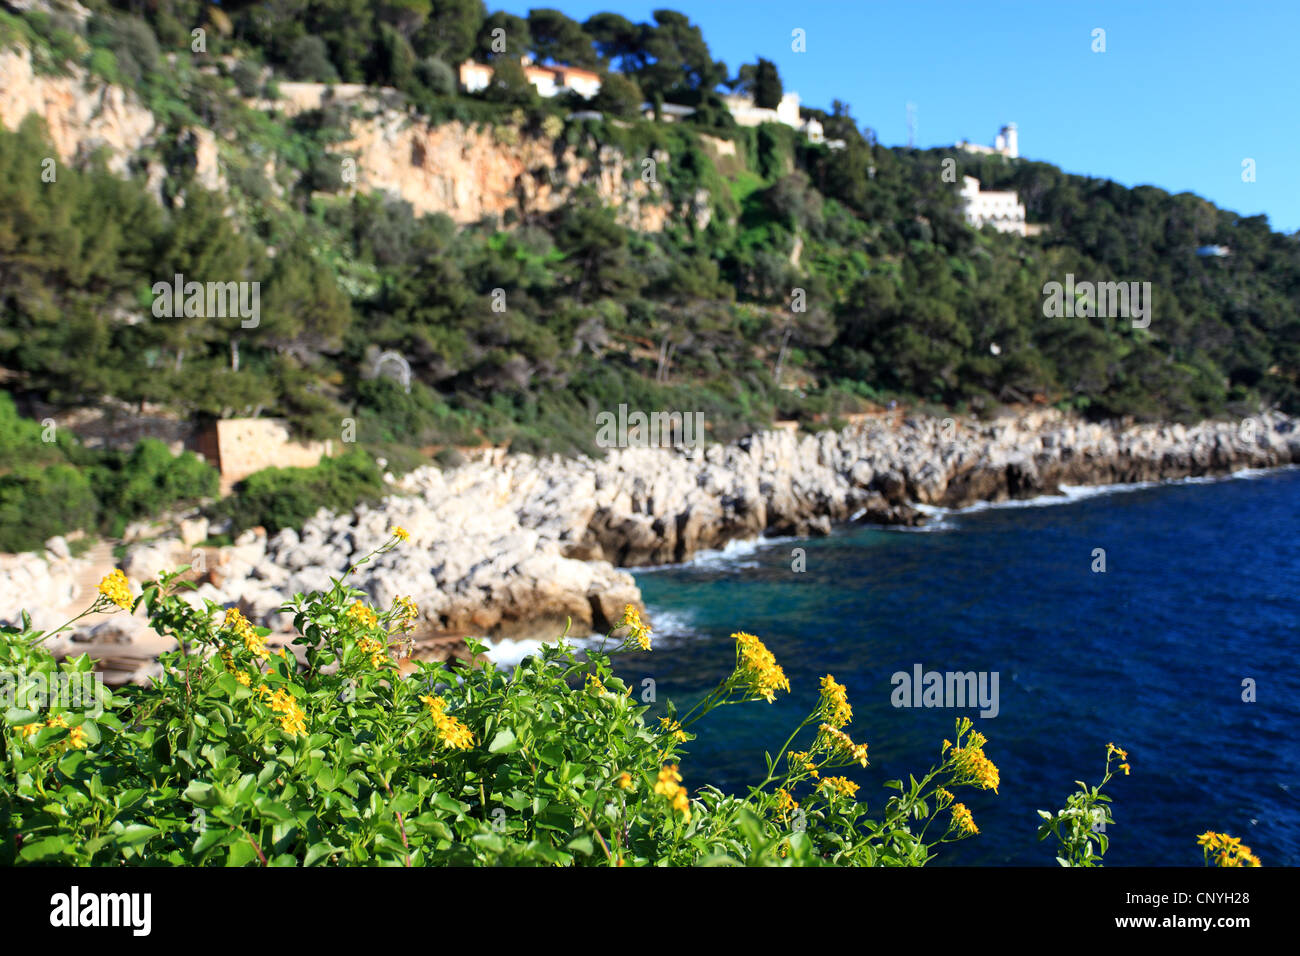 Sentier naturel le long du Cap Ferrat avec végétation méditerranéenne Banque D'Images